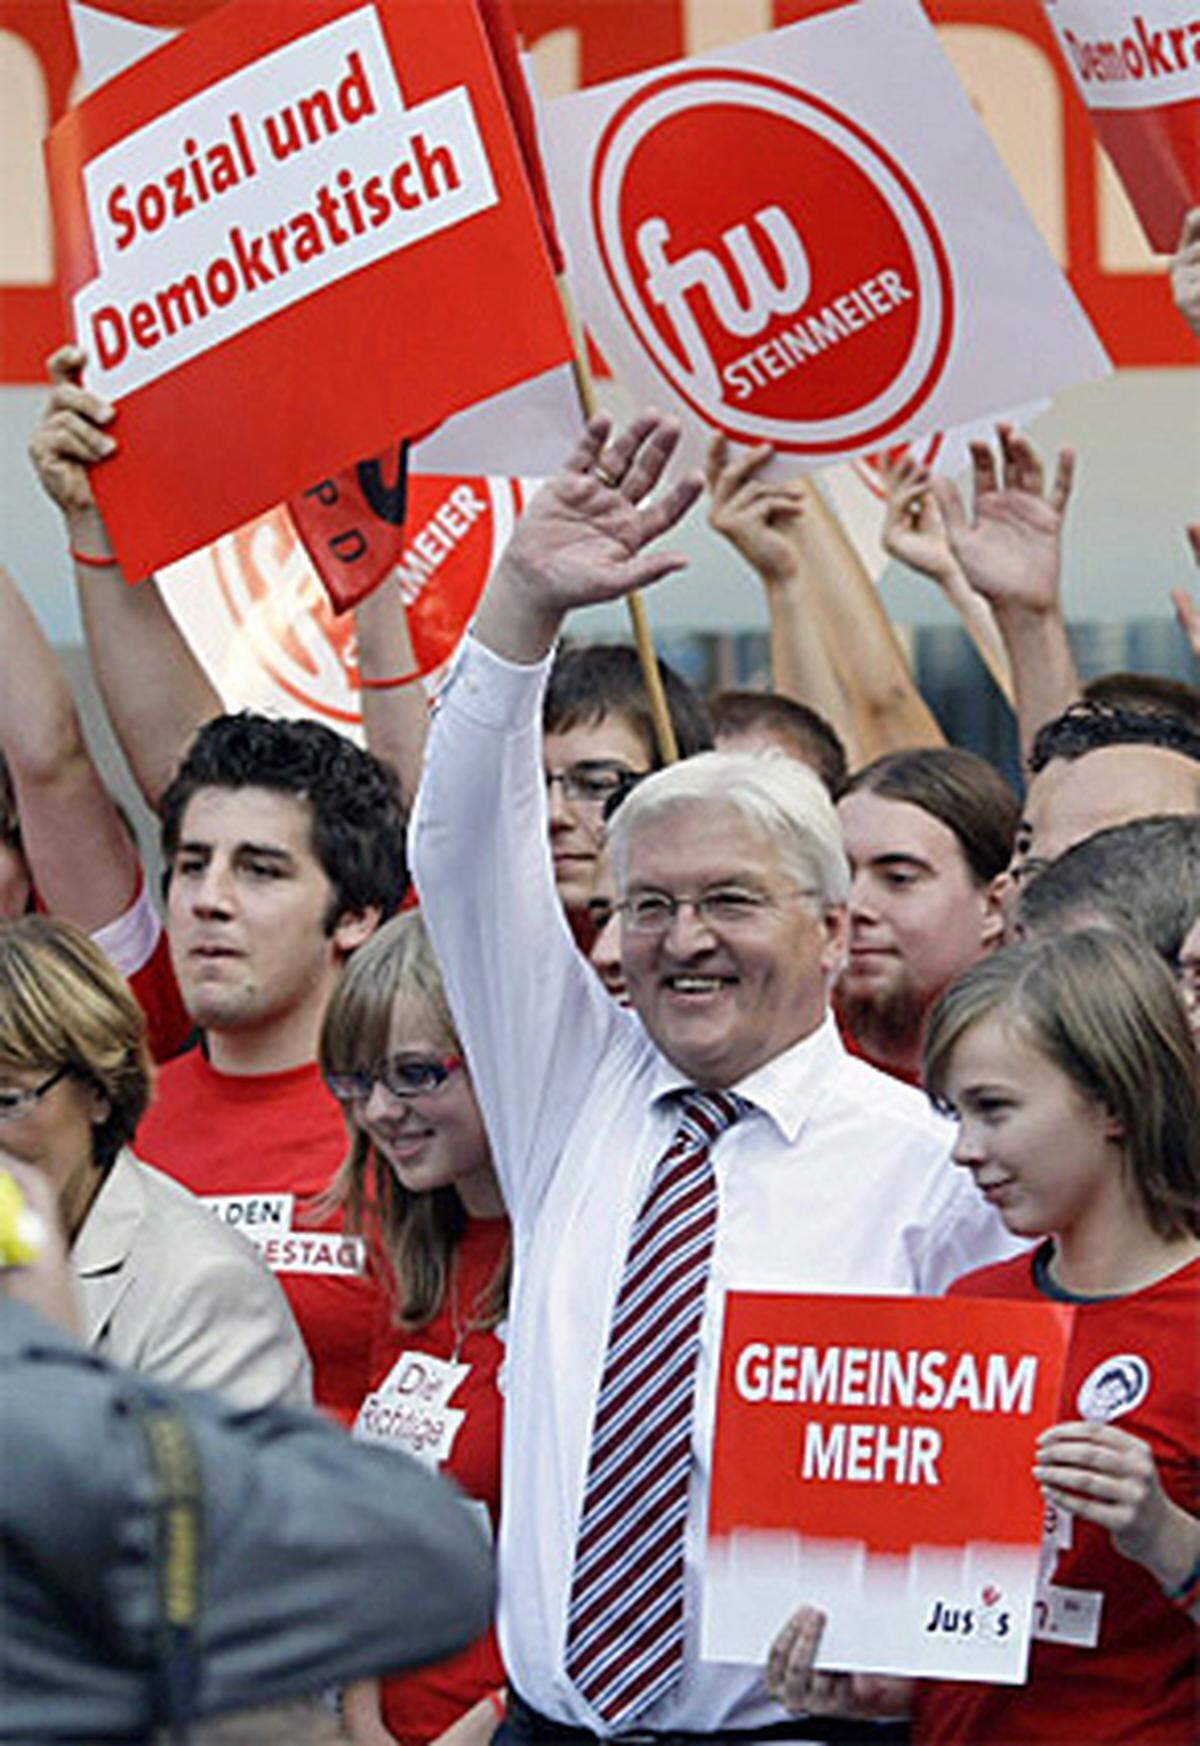 Die Wahlveranstaltungen sind denen von der CDU recht ähnlich: Frank-Walter Steinmeier auf der Bühne in Aachen, umringt von Jugendlichen, die Schilder in die Höhe halten.